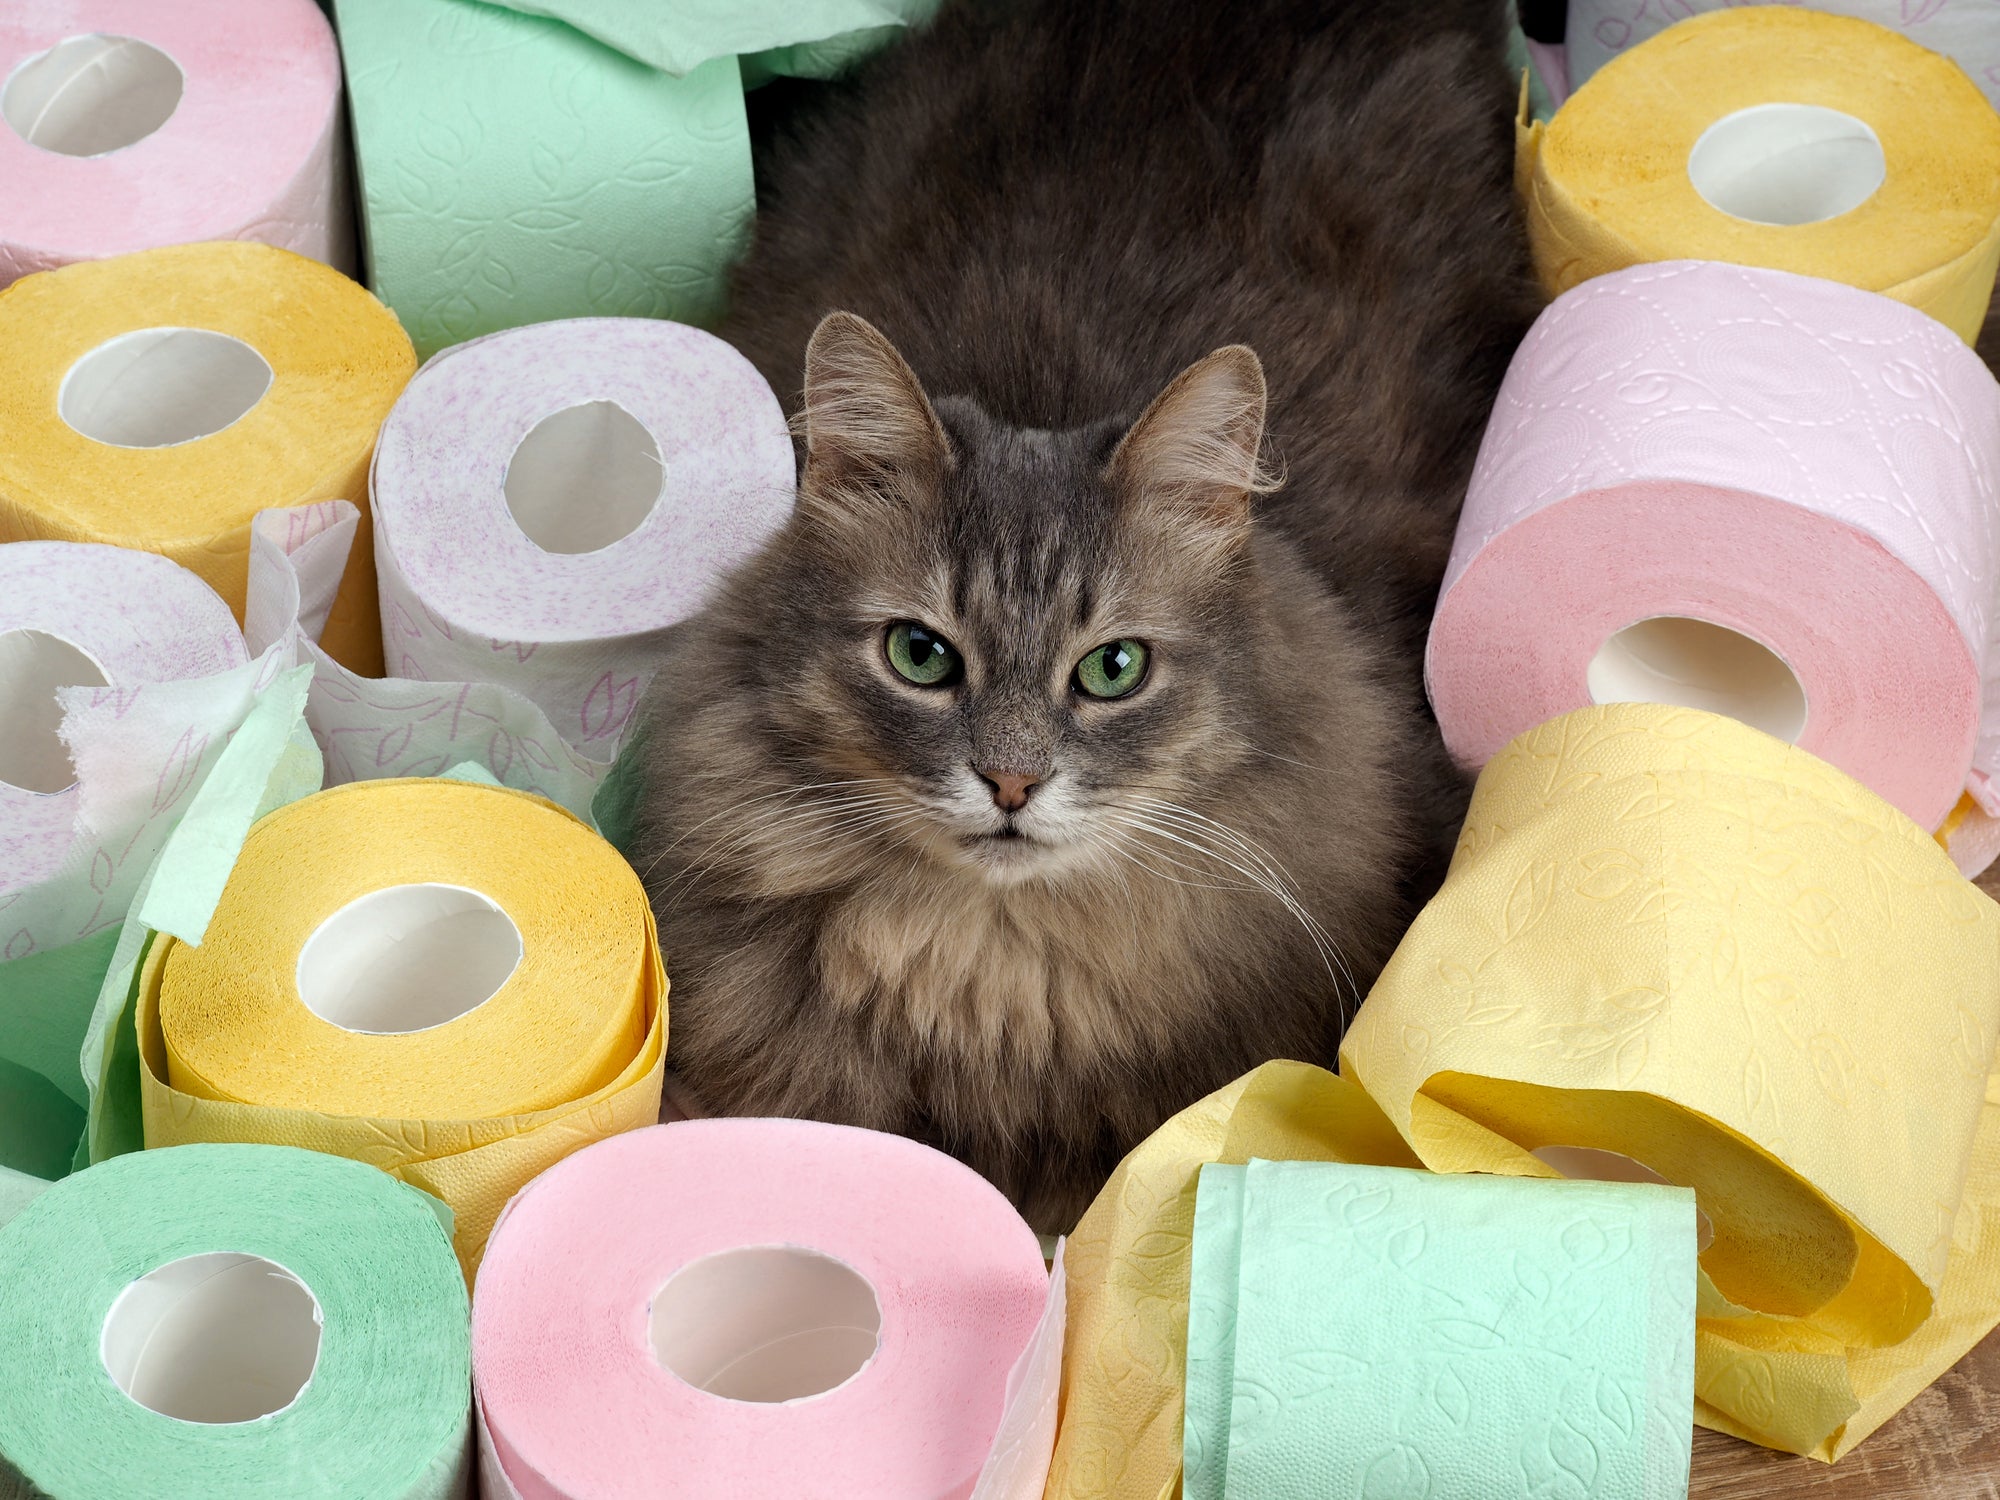 Gato no meio de rolos de papel higiênico coloridos